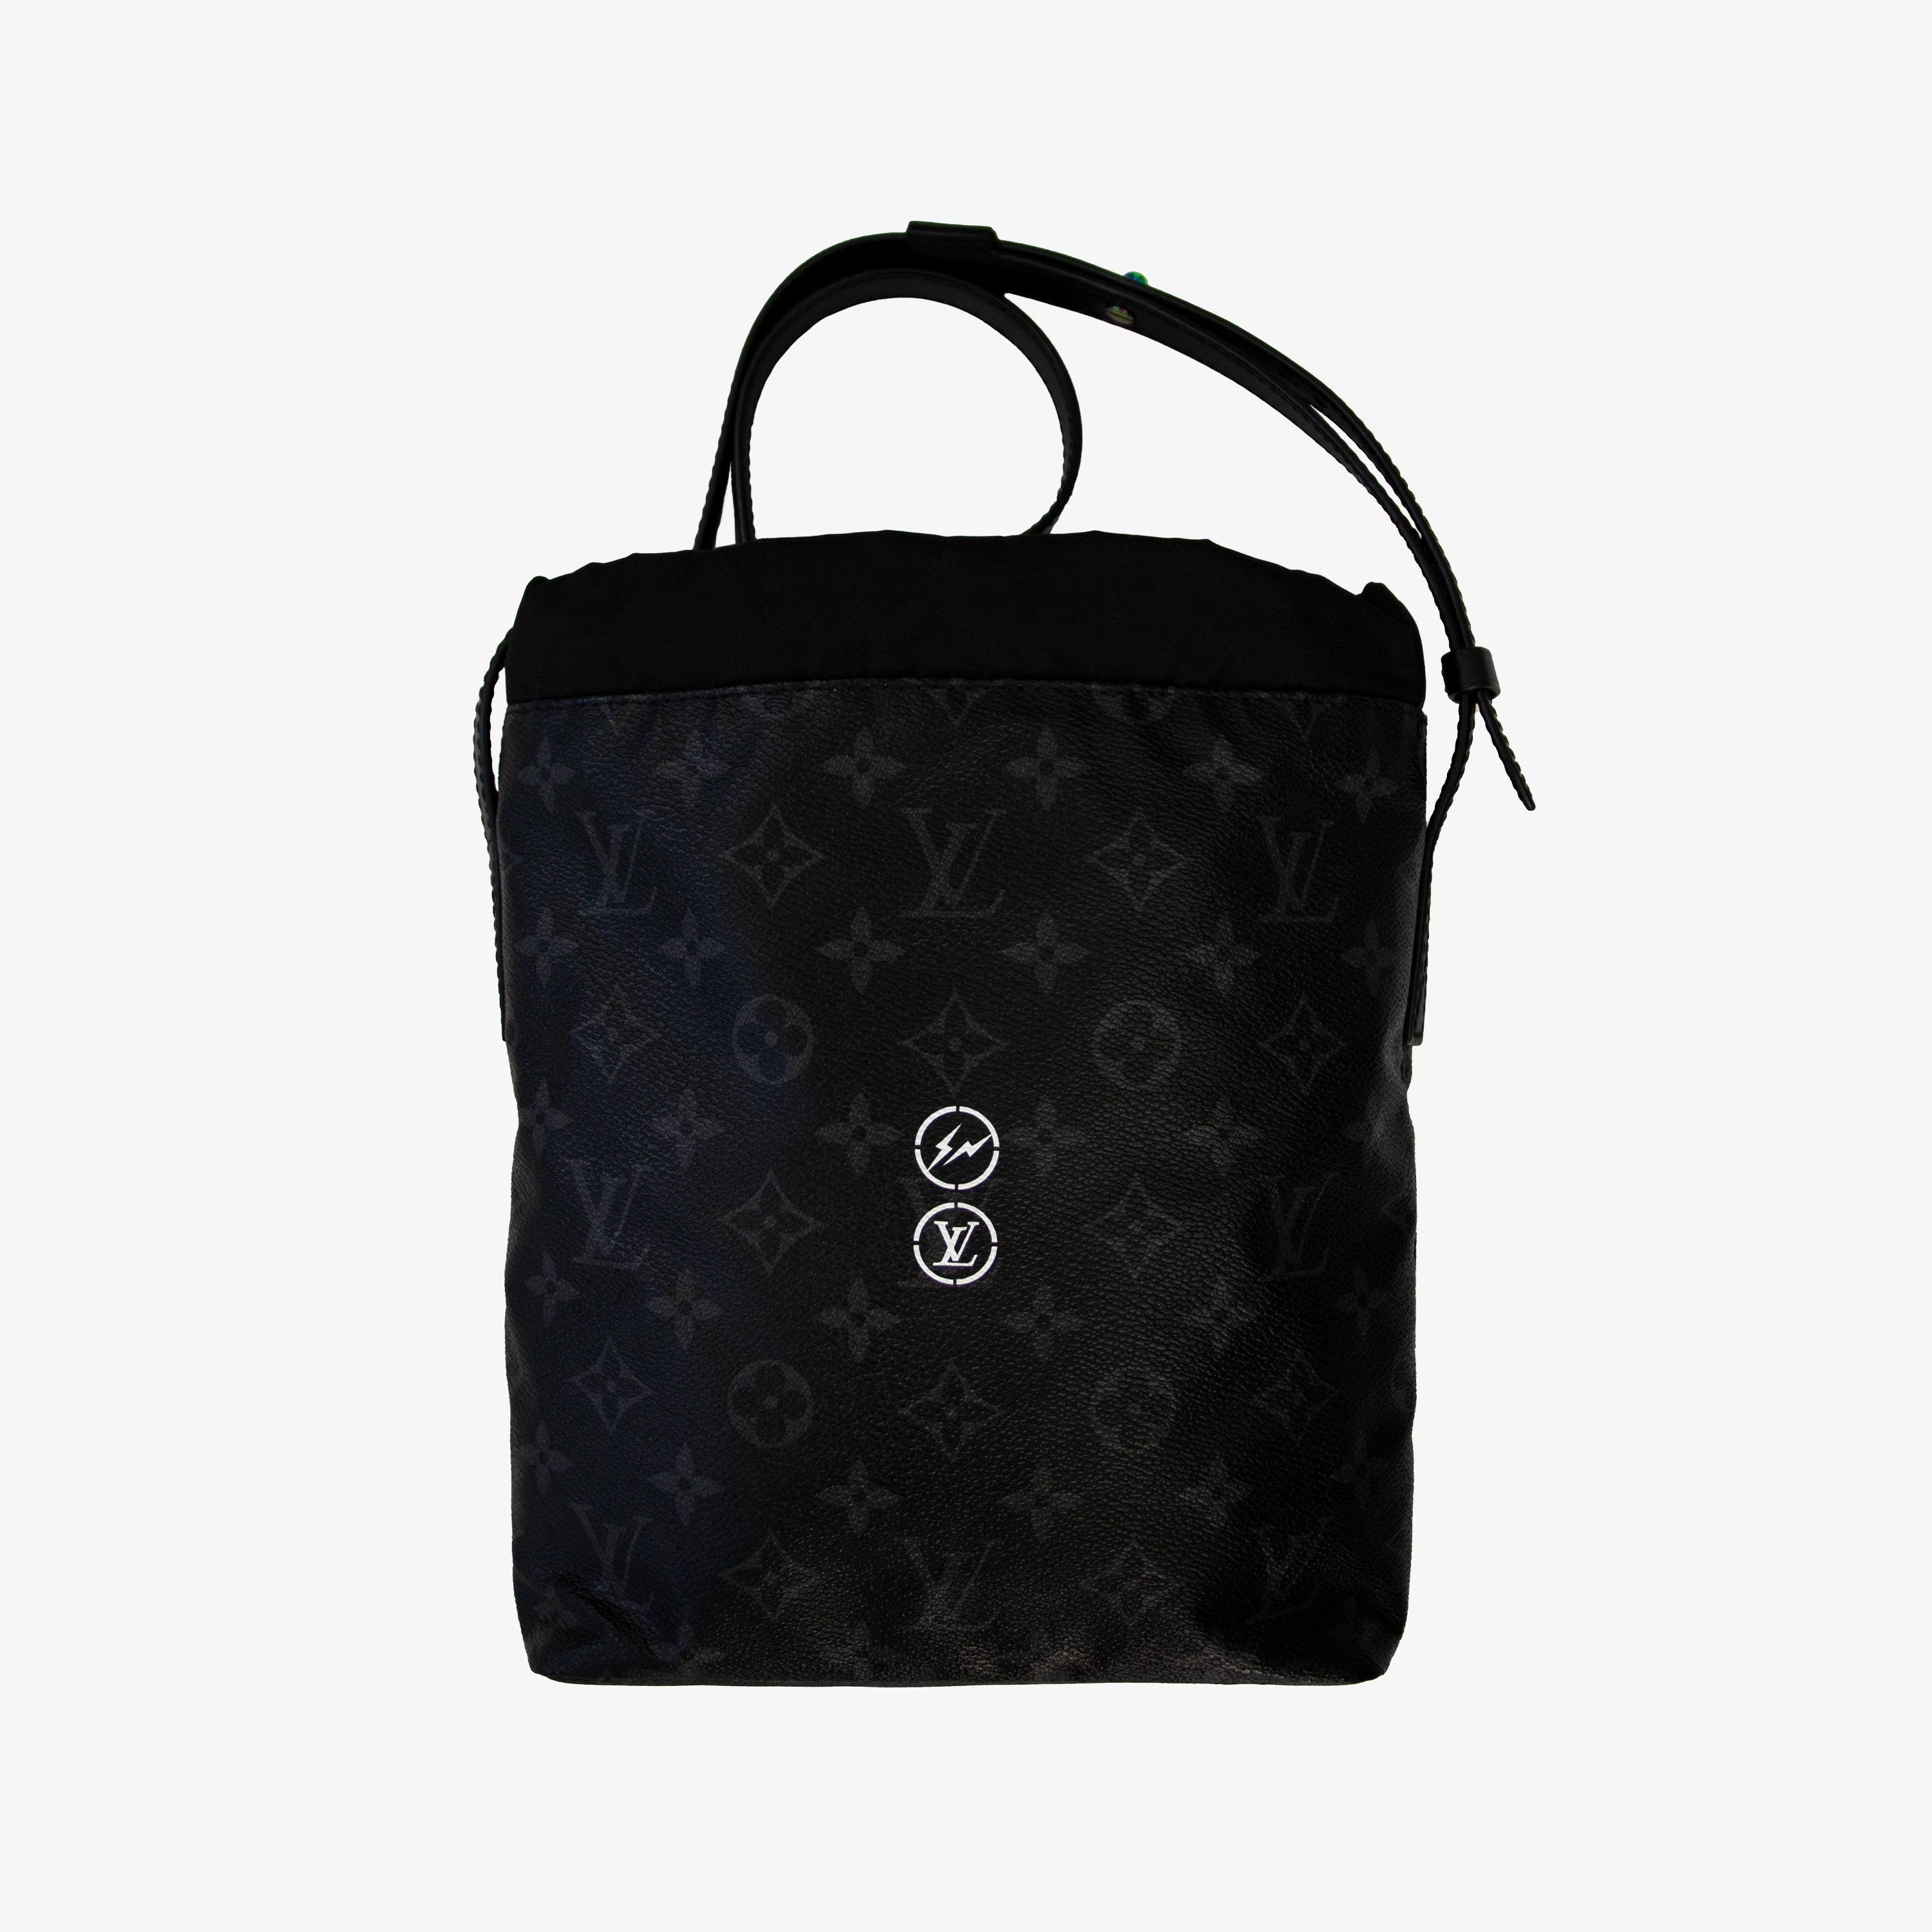 Louis Vuitton x Fragment Nano Bag Review & Unboxing (Monogram Eclipse) 